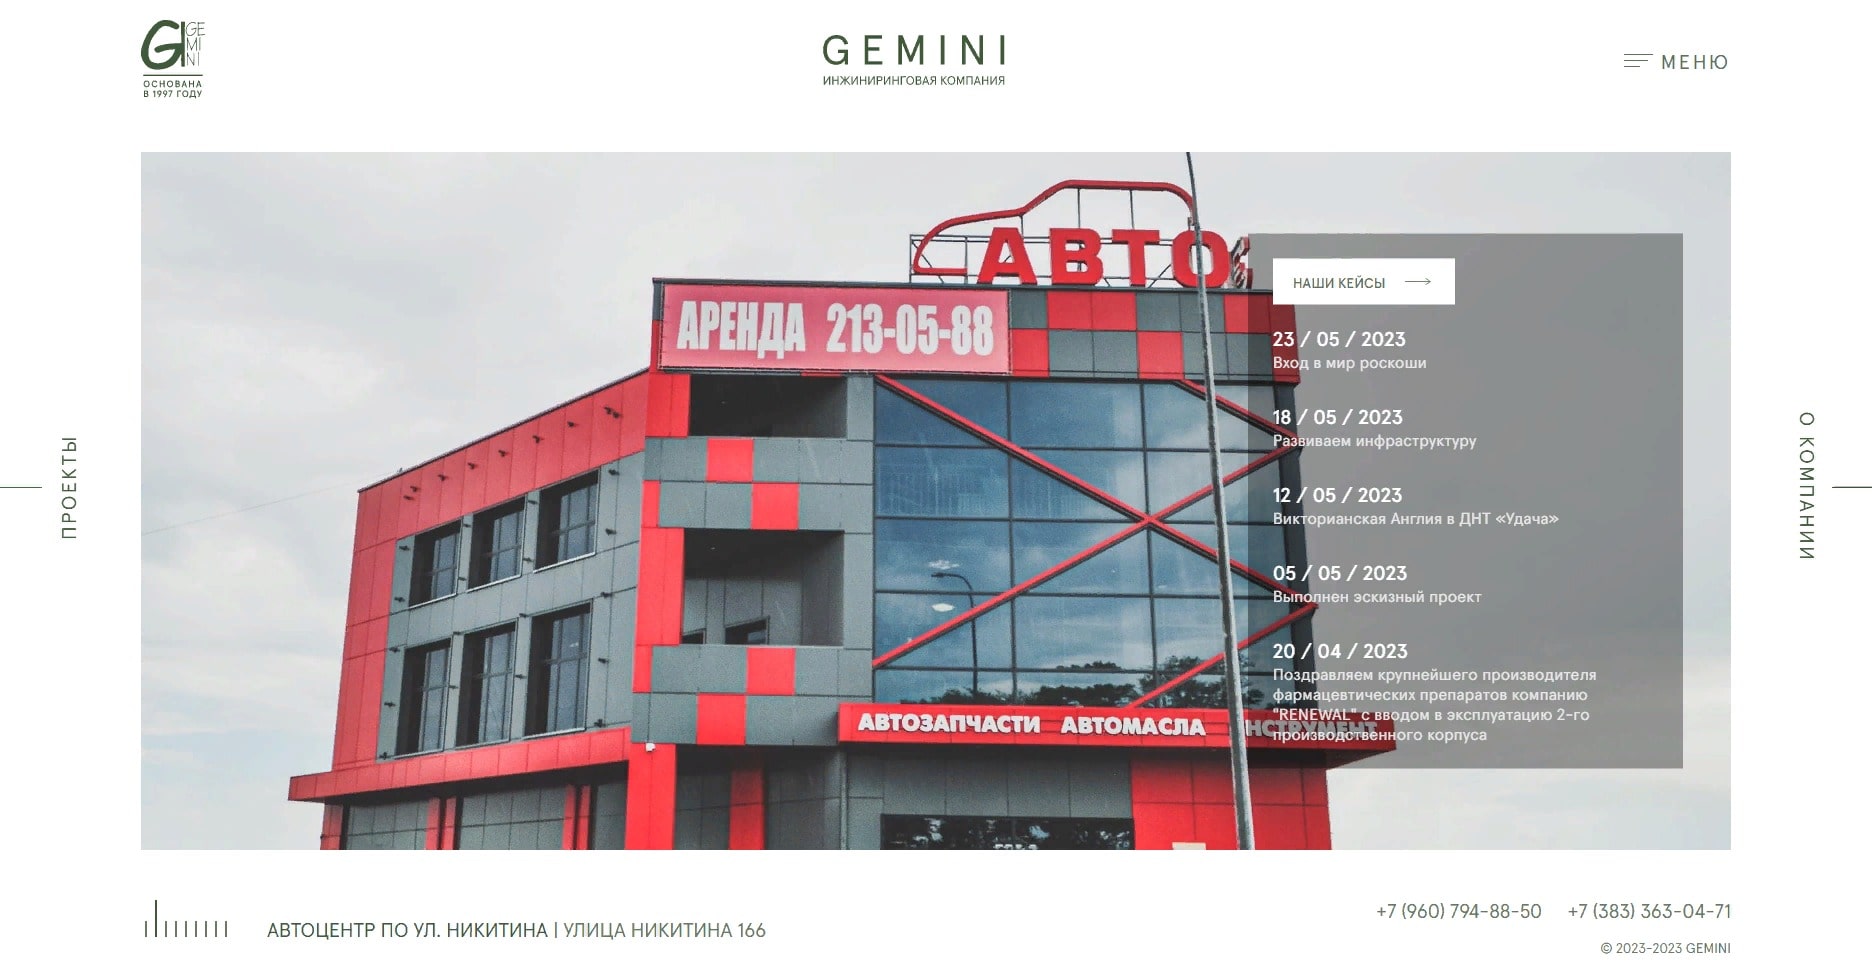 Сайт инжиниринговой компании "Gemini"